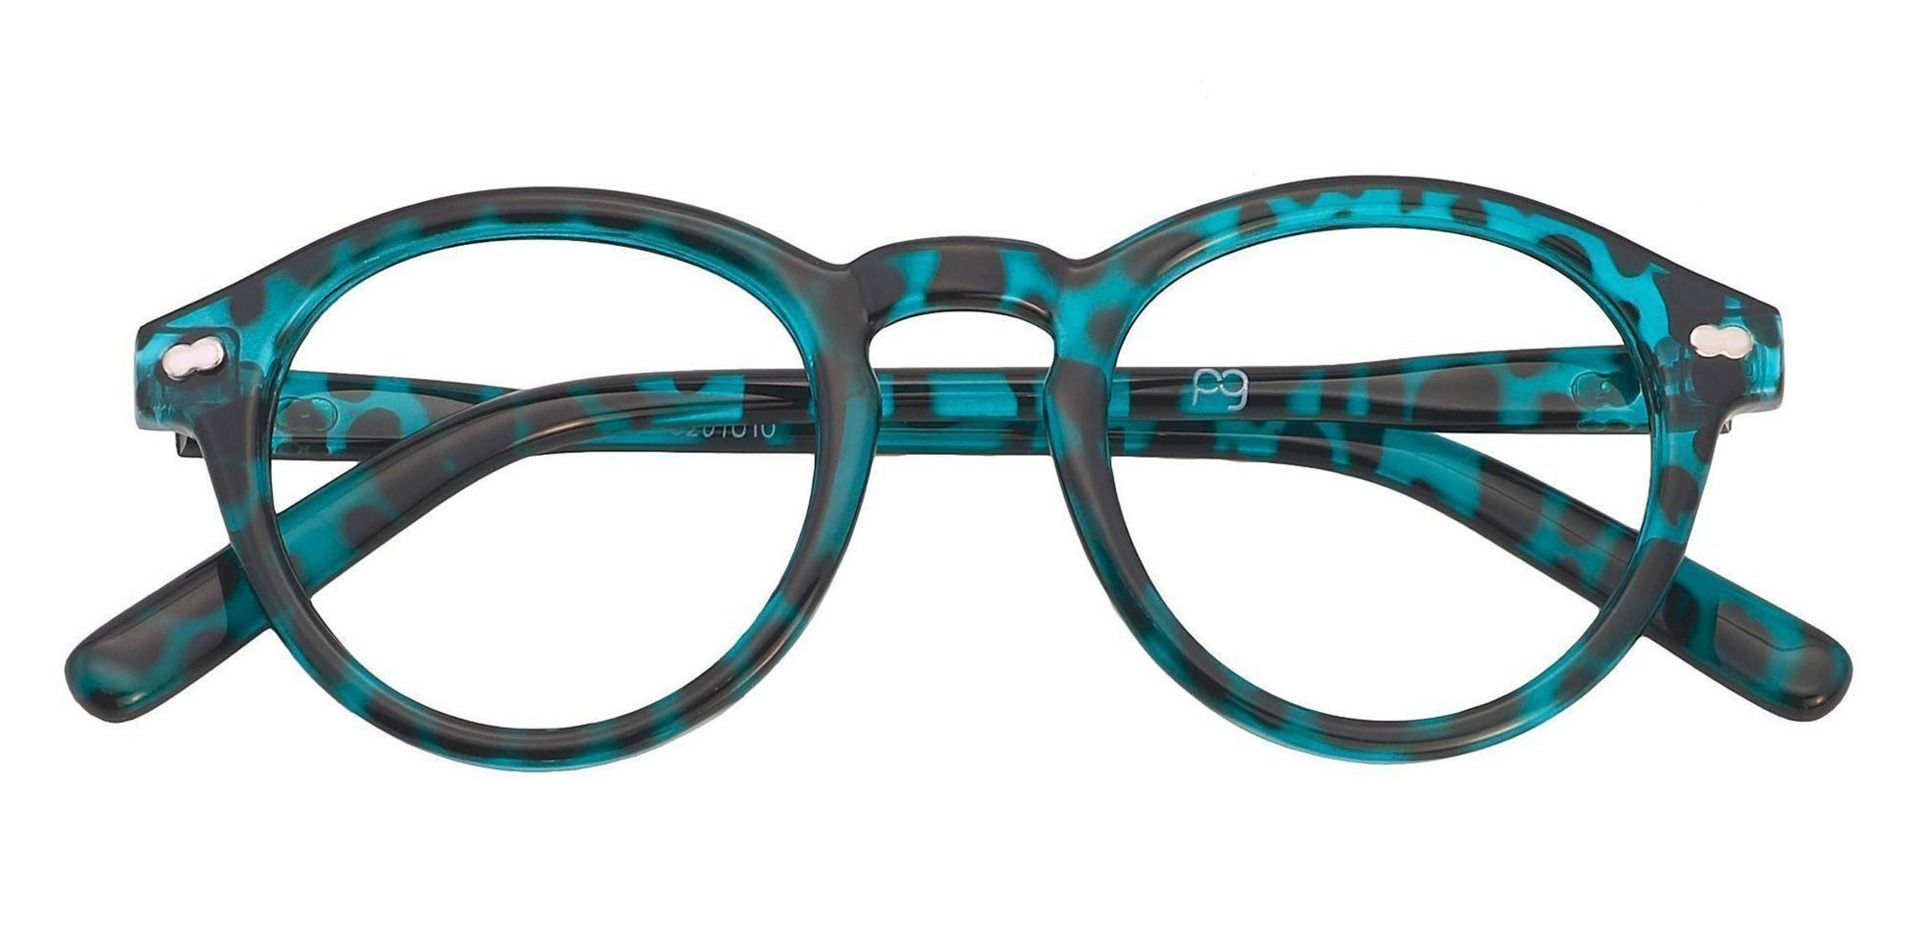 Vee Round Prescription Glasses Blue Women S Eyeglasses Payne Glasses